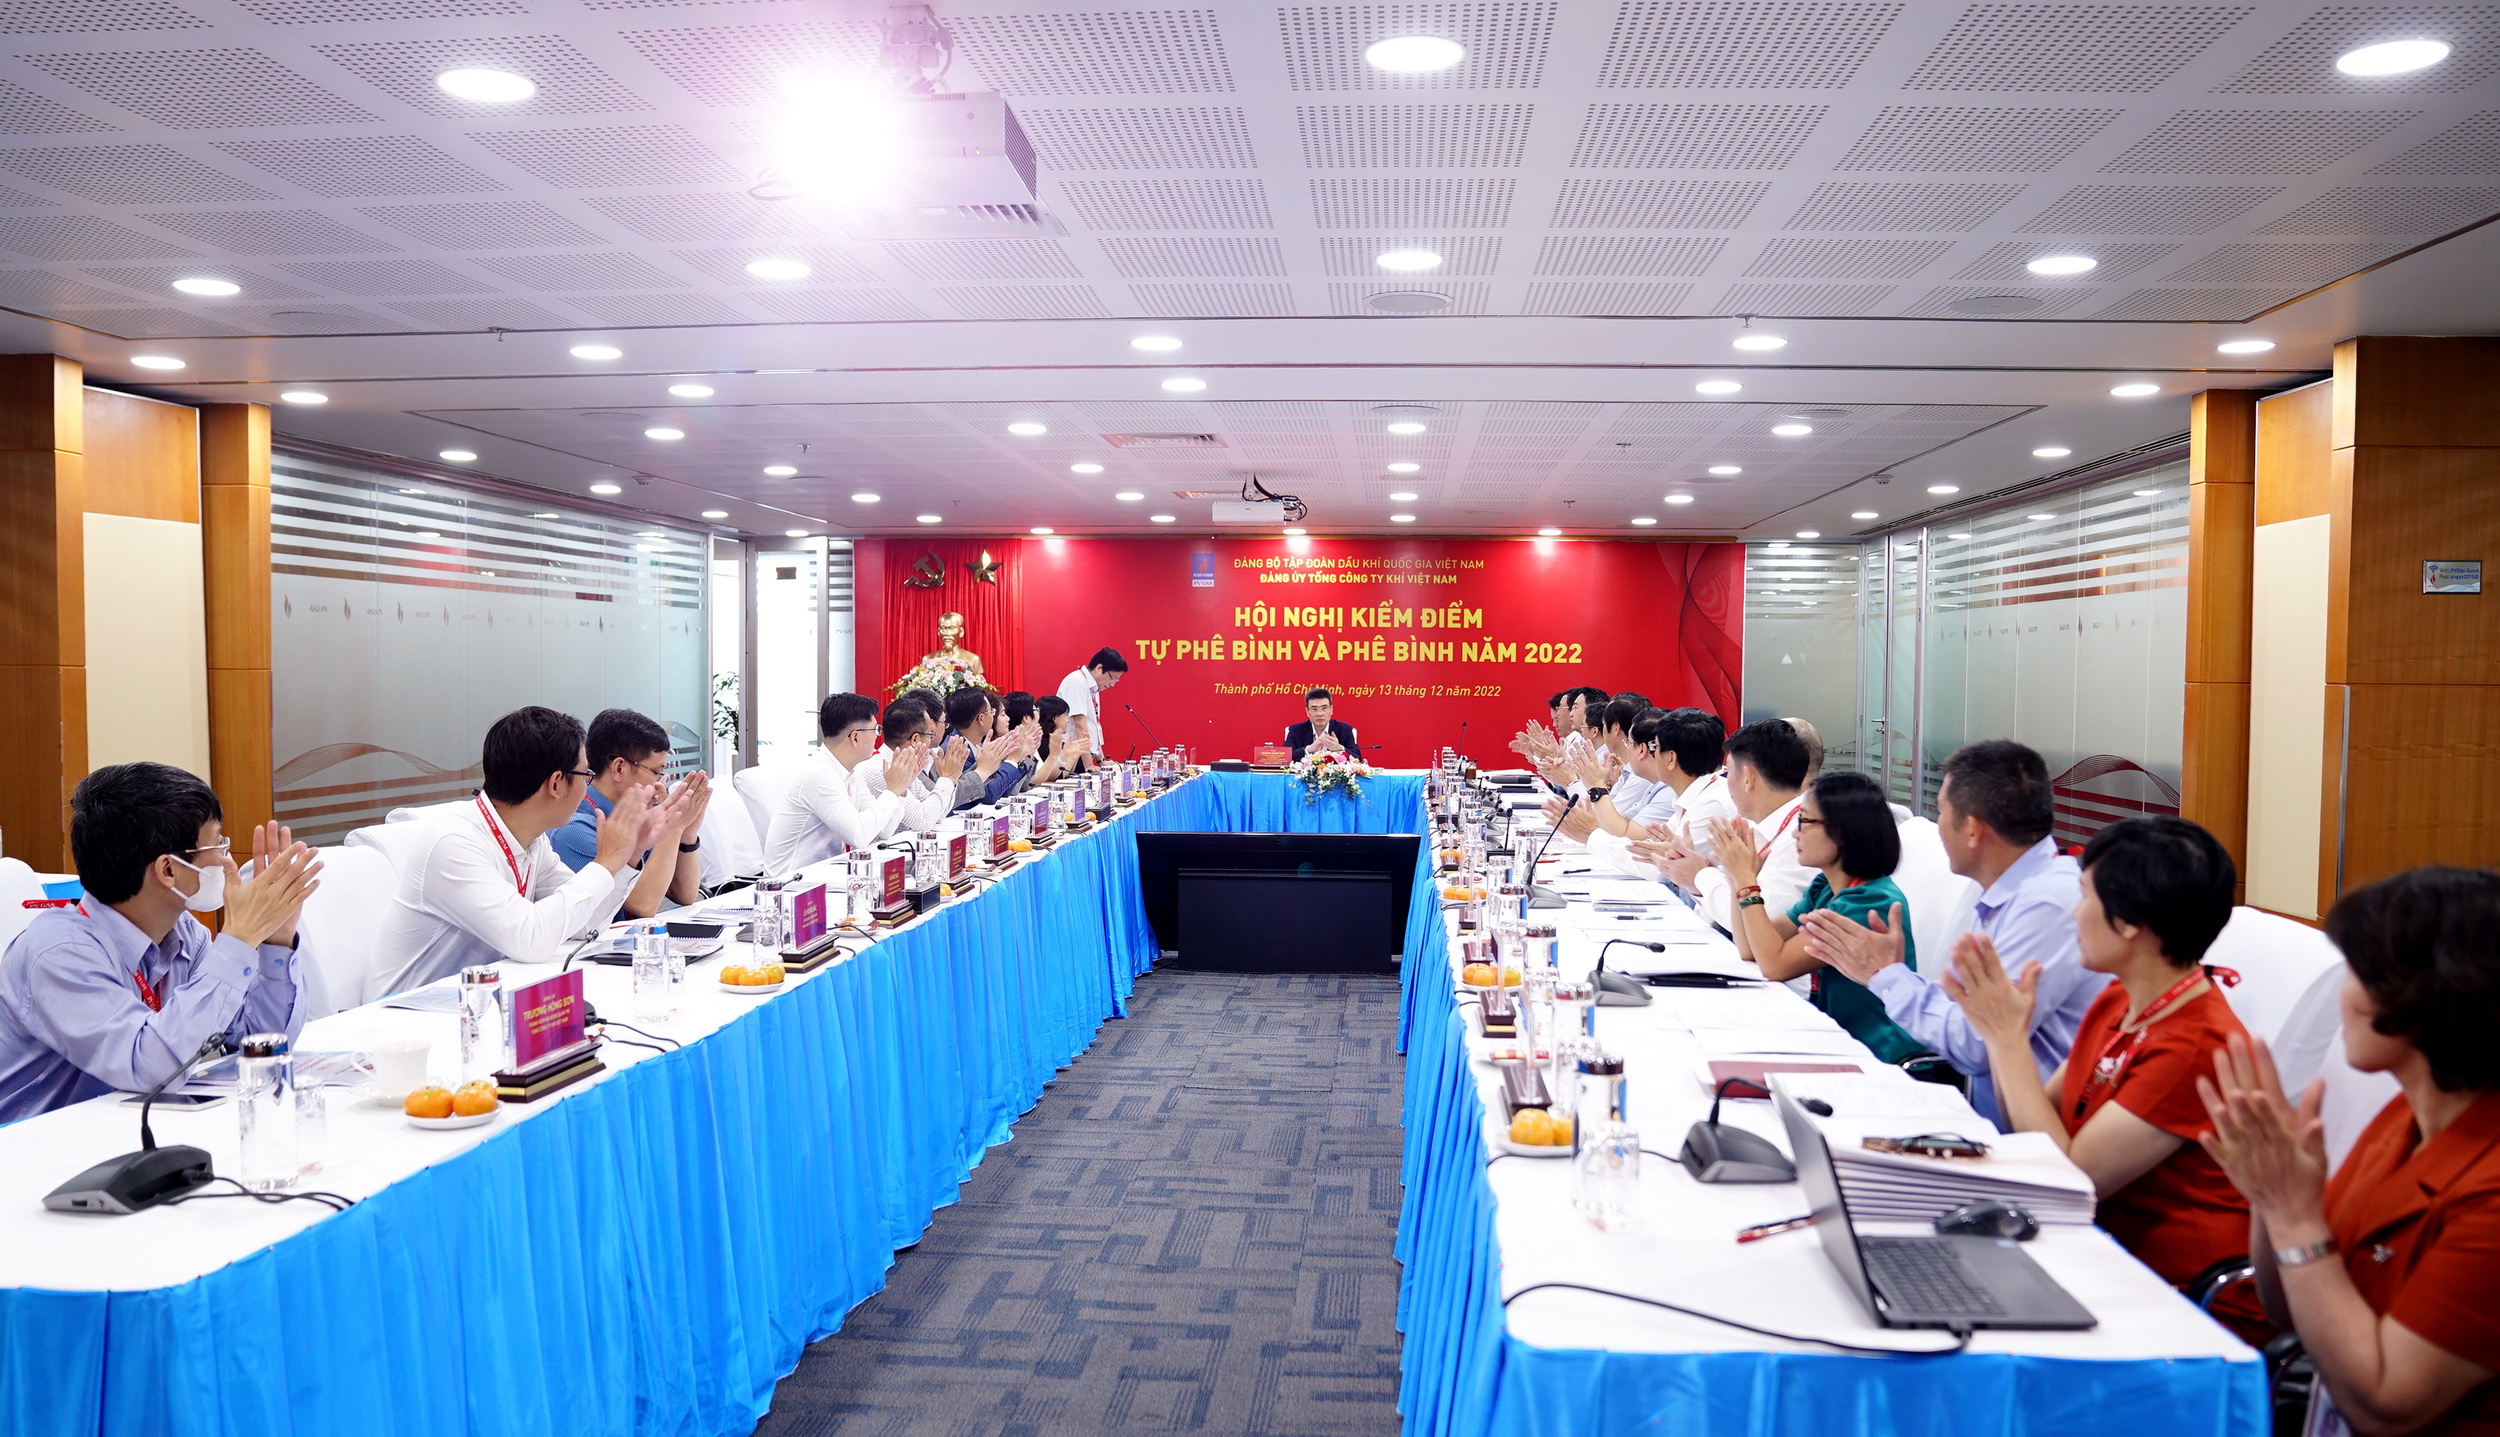 Đảng ủy Tổng công ty Khí Việt Nam tổ chức hội nghị kiểm điểm, tự phê bình và phê bình năm 2022